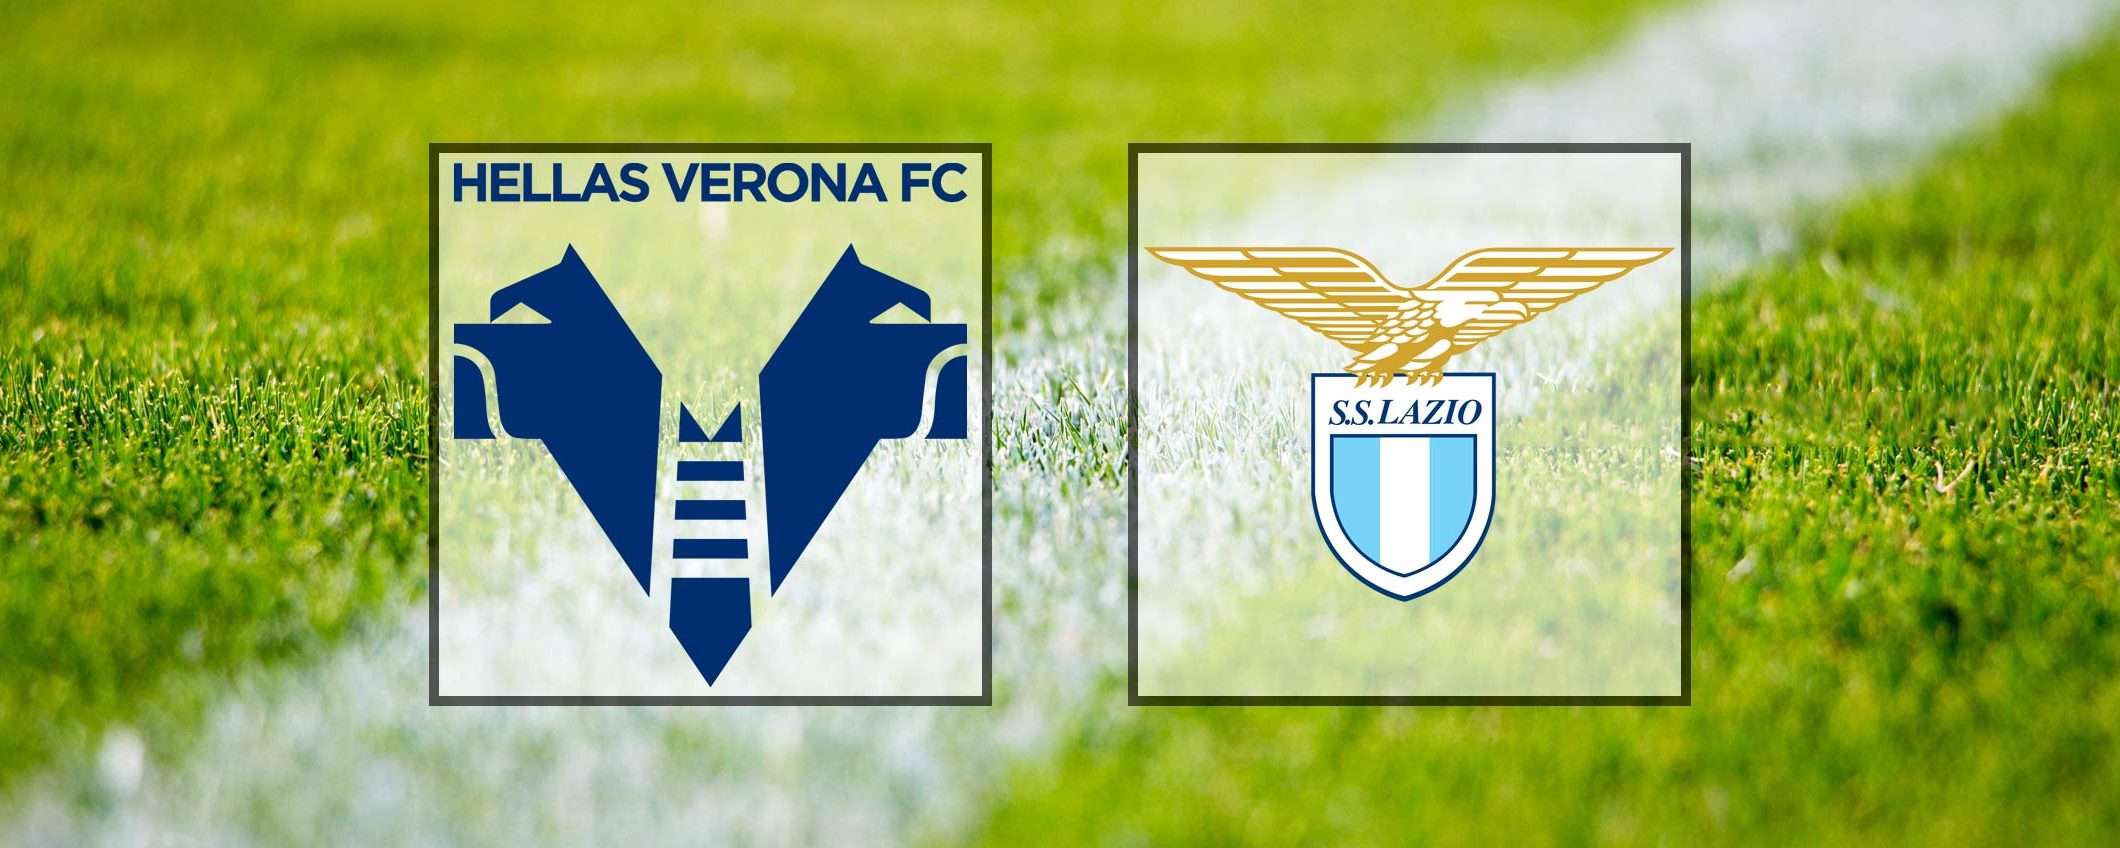 Come vedere Verona-Lazio in streaming